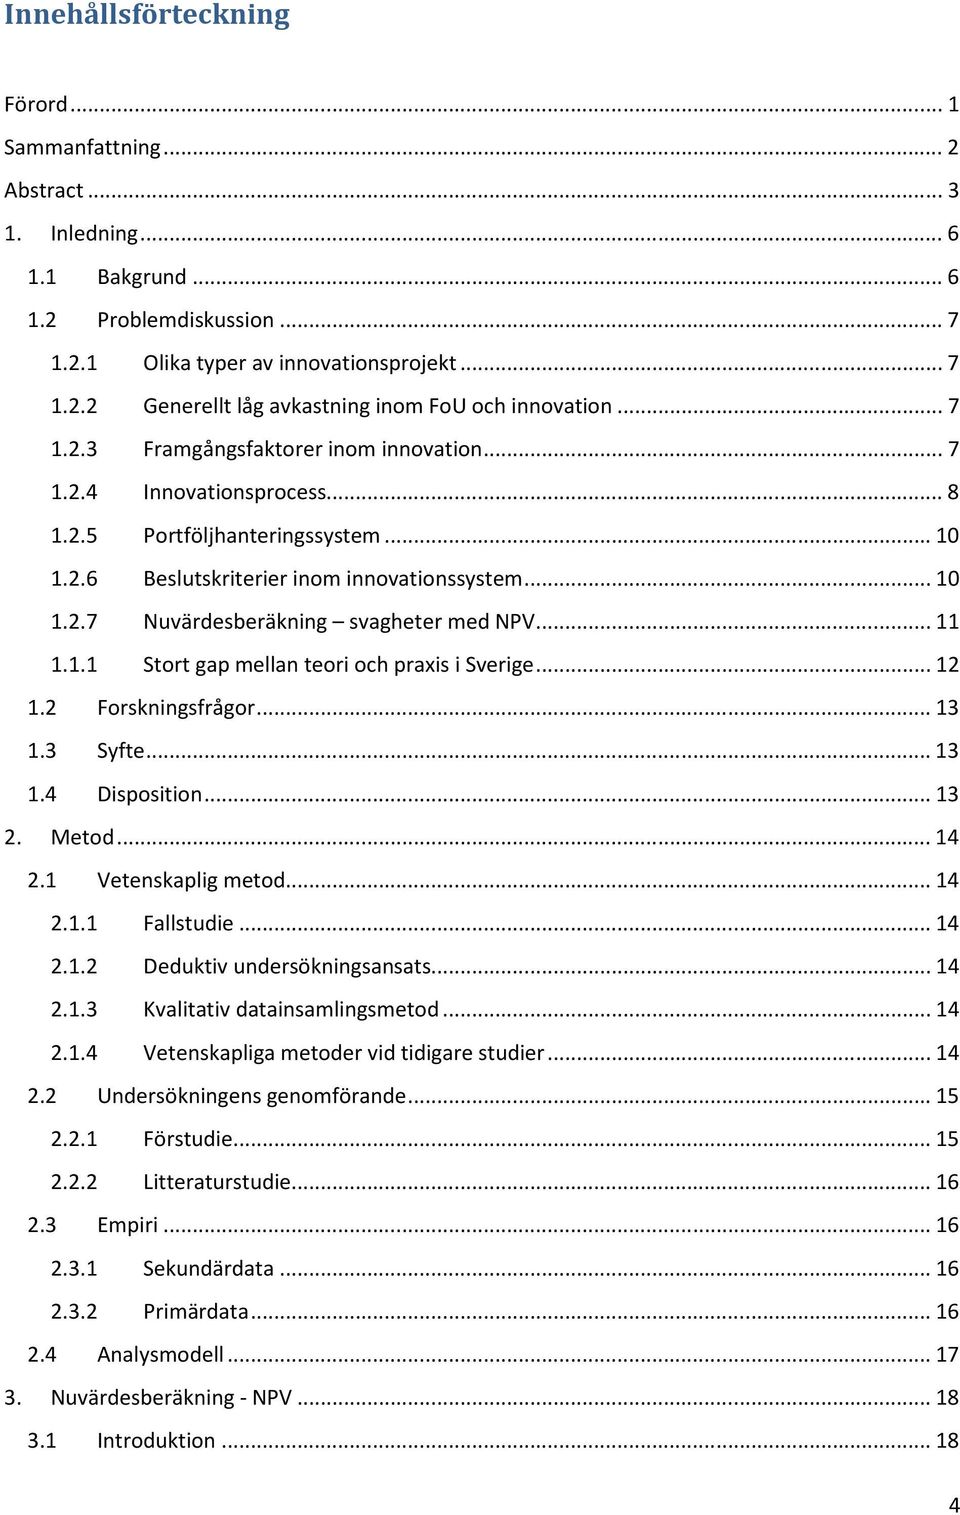 .. 11 1.1.1 Stort gap mellan teori och praxis i Sverige... 12 1.2 Forskningsfrågor... 13 1.3 Syfte... 13 1.4 Disposition... 13 2. Metod... 14 2.1 Vetenskaplig metod... 14 2.1.1 Fallstudie... 14 2.1.2 Deduktiv undersökningsansats.